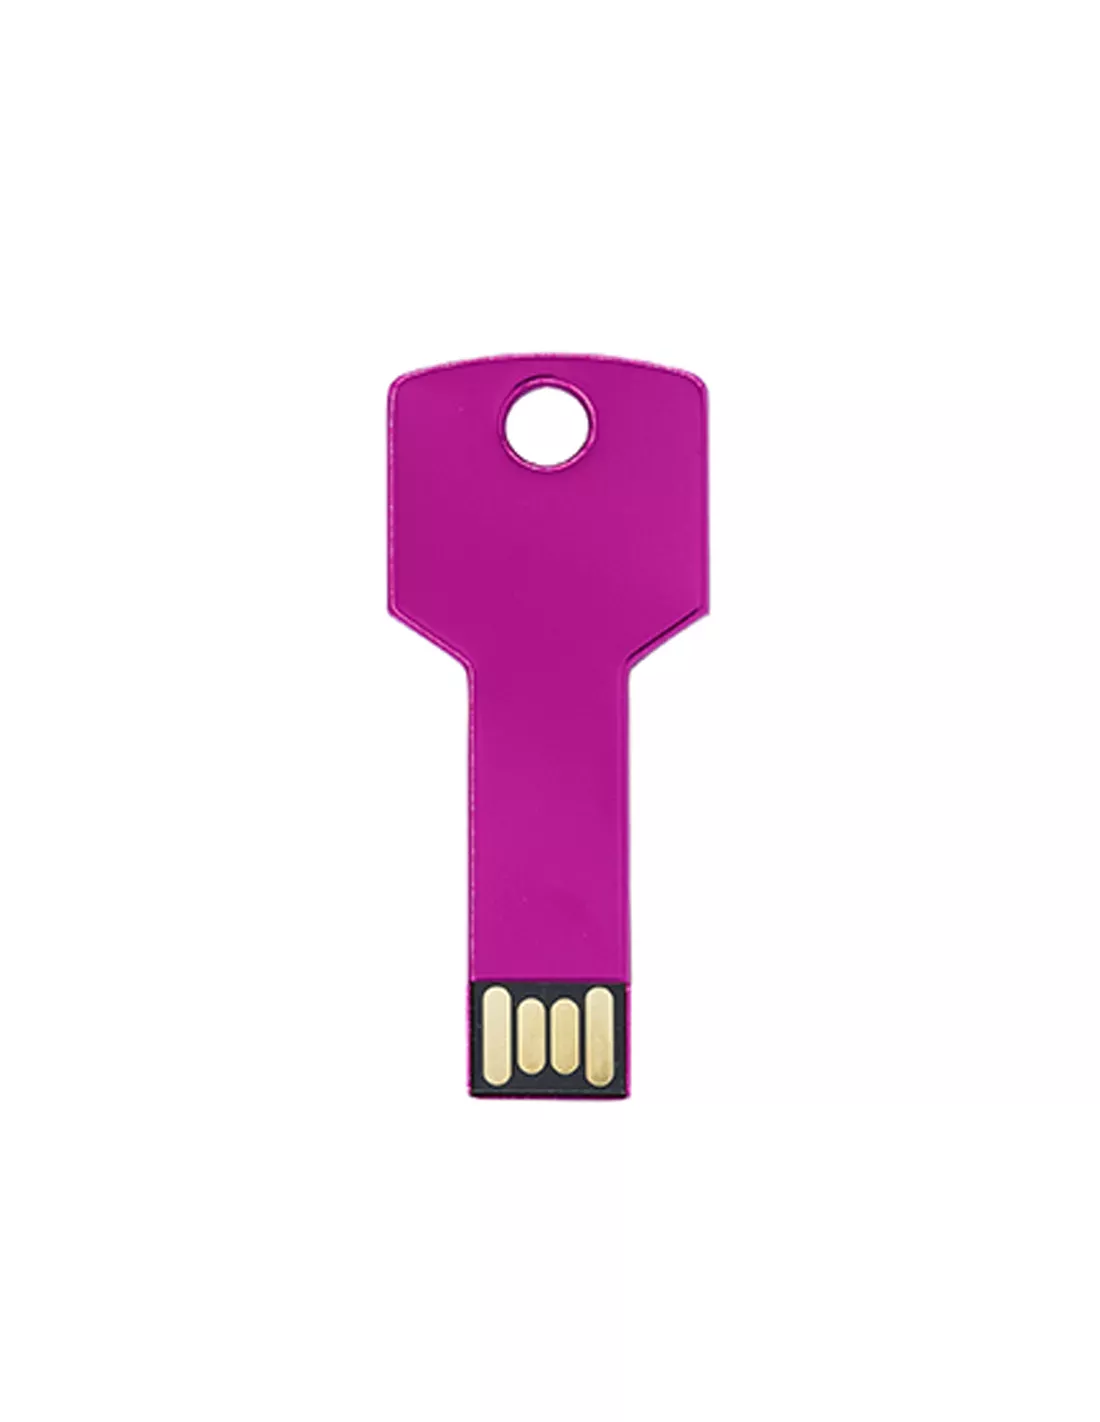 Pendrive extraplano (memoria USB) personalizado, formato llave  16GB CYCLON color fucsia